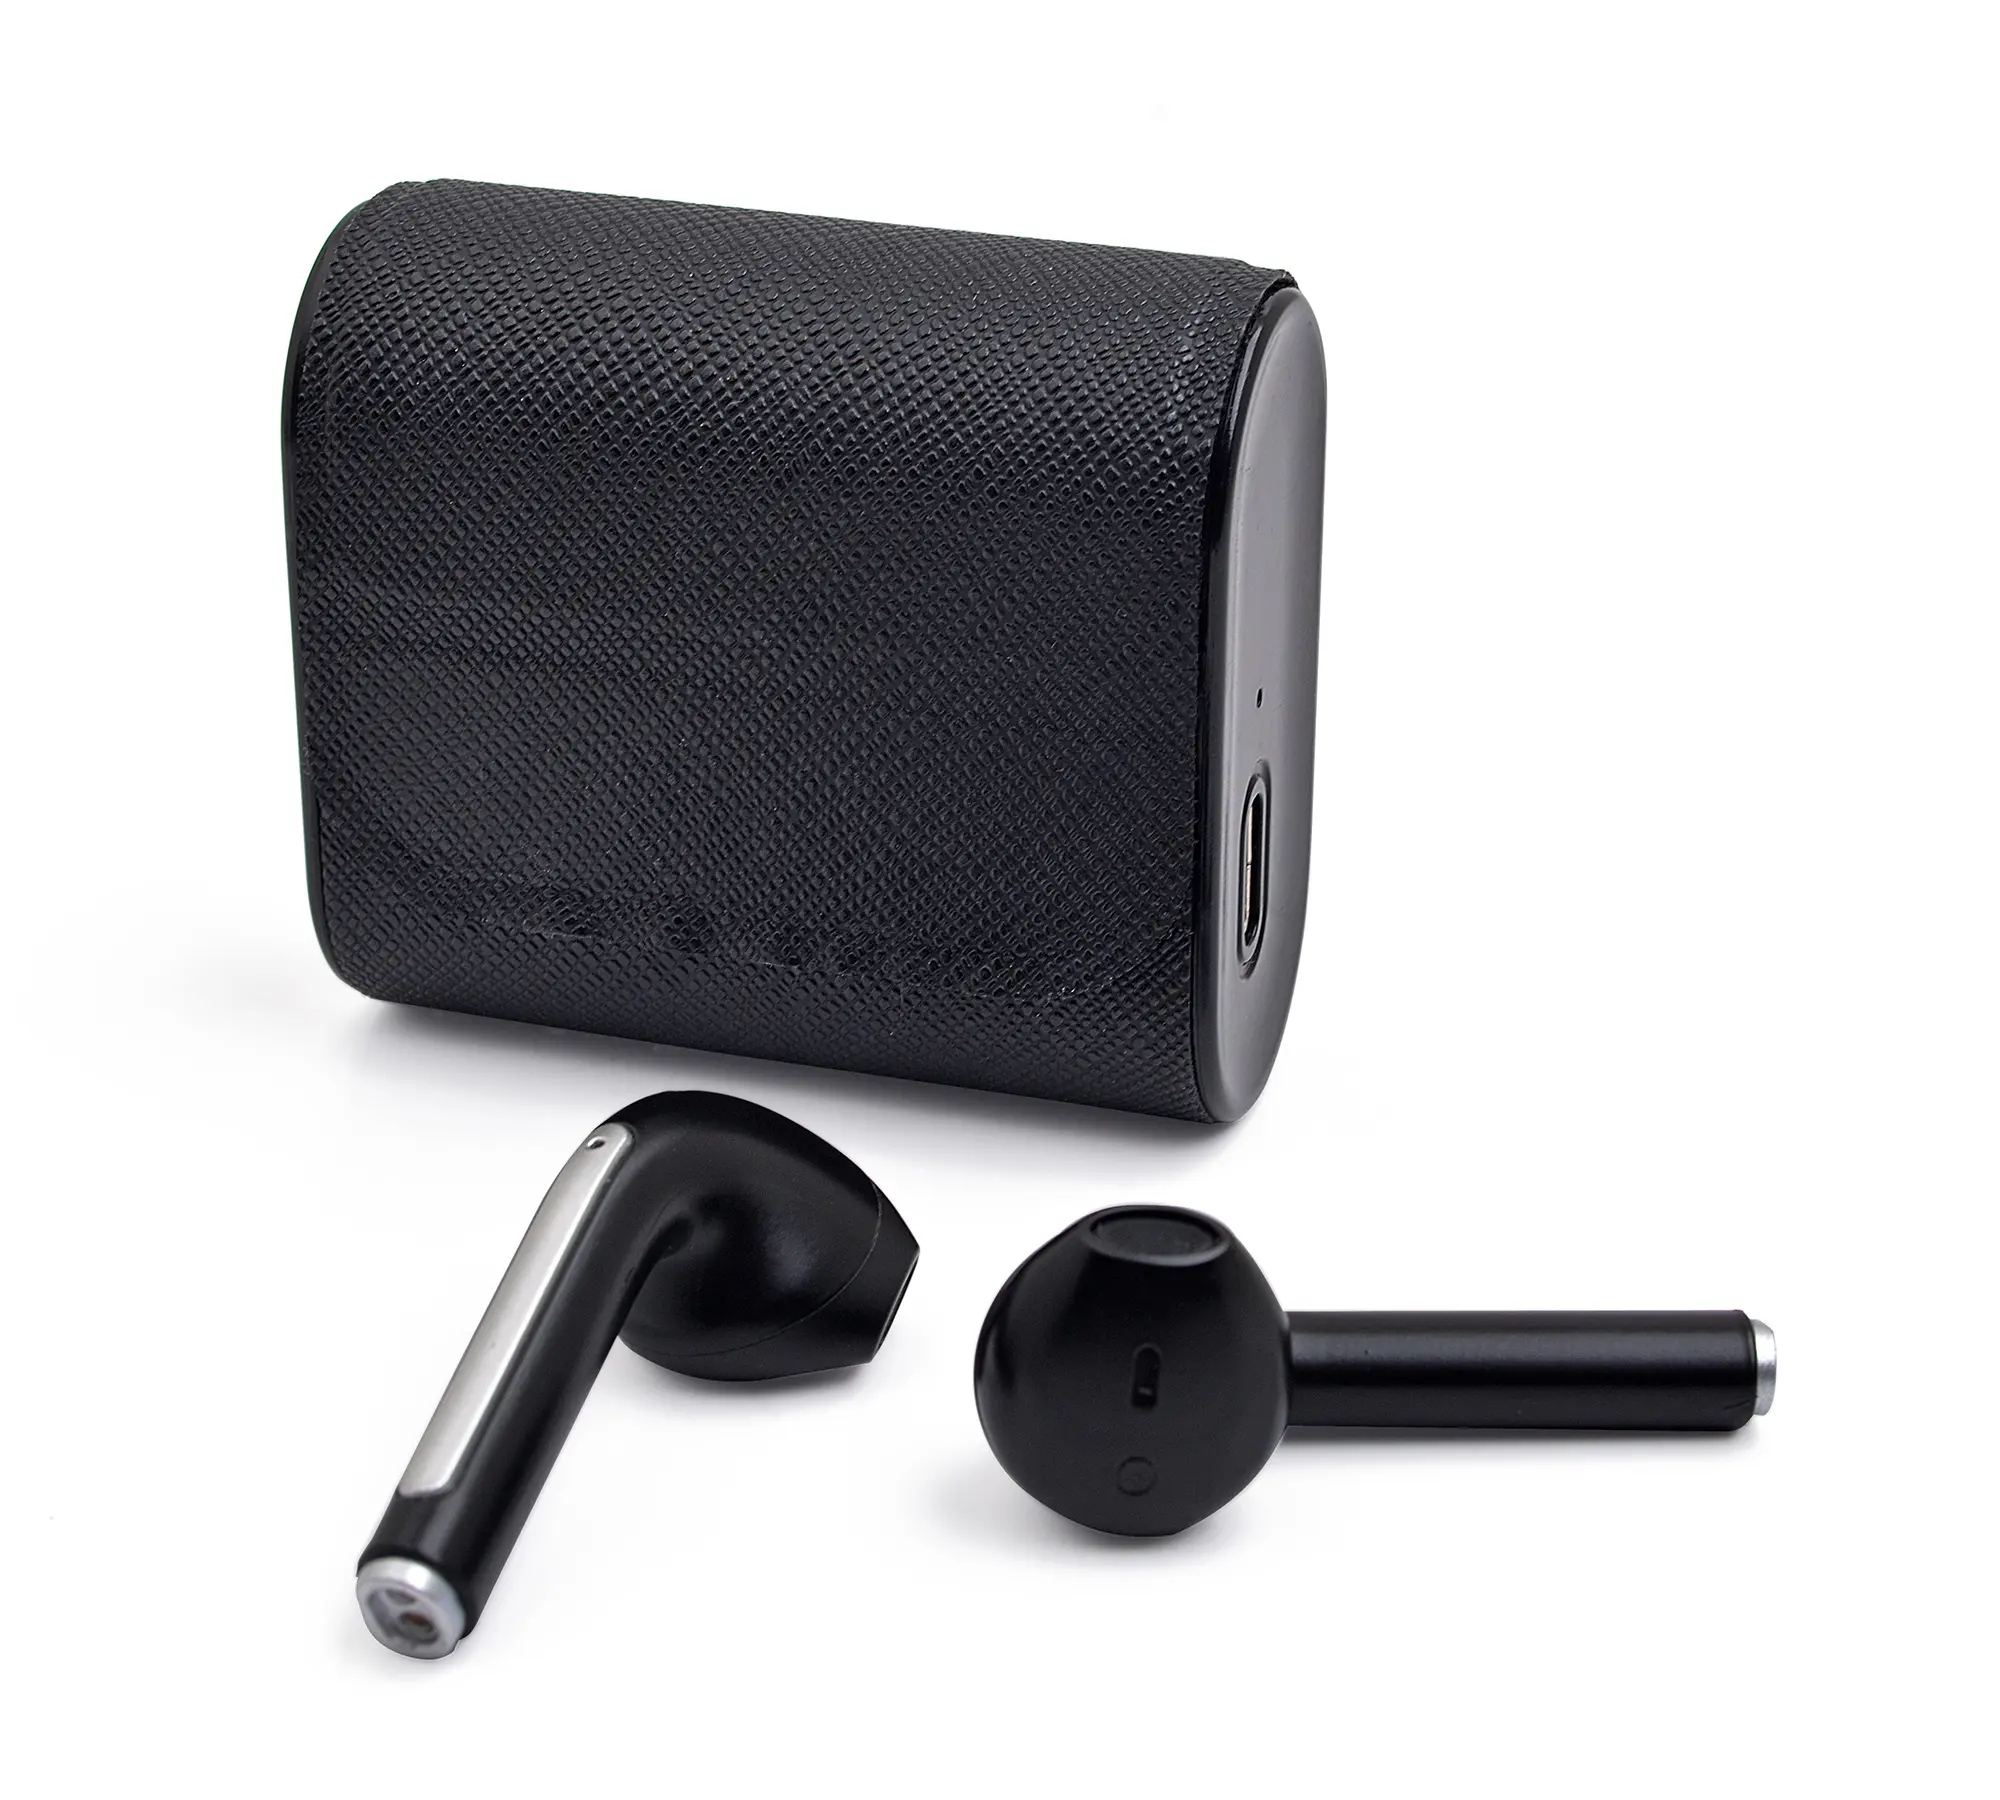 Kablosuz kulaklık uzun menzilli aptx bluetooth 5.0 tws mini kulaklık yüksek kaliteli ses markalı tüketici elektronik ürün kulaklık